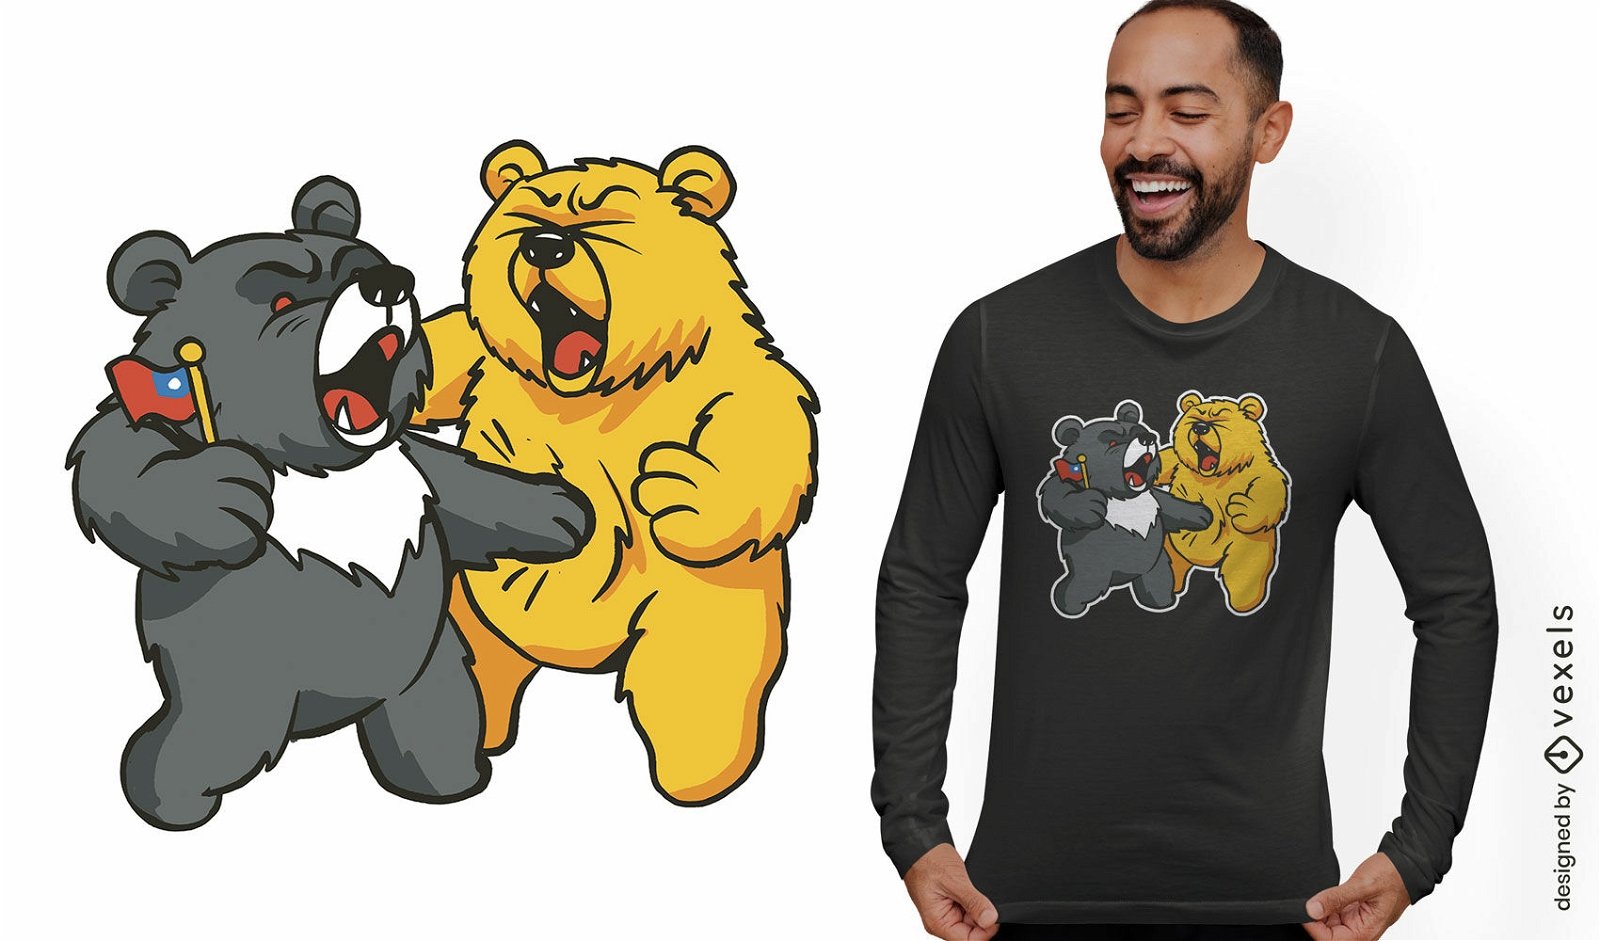 Bären-Humor-T-Shirt-Design